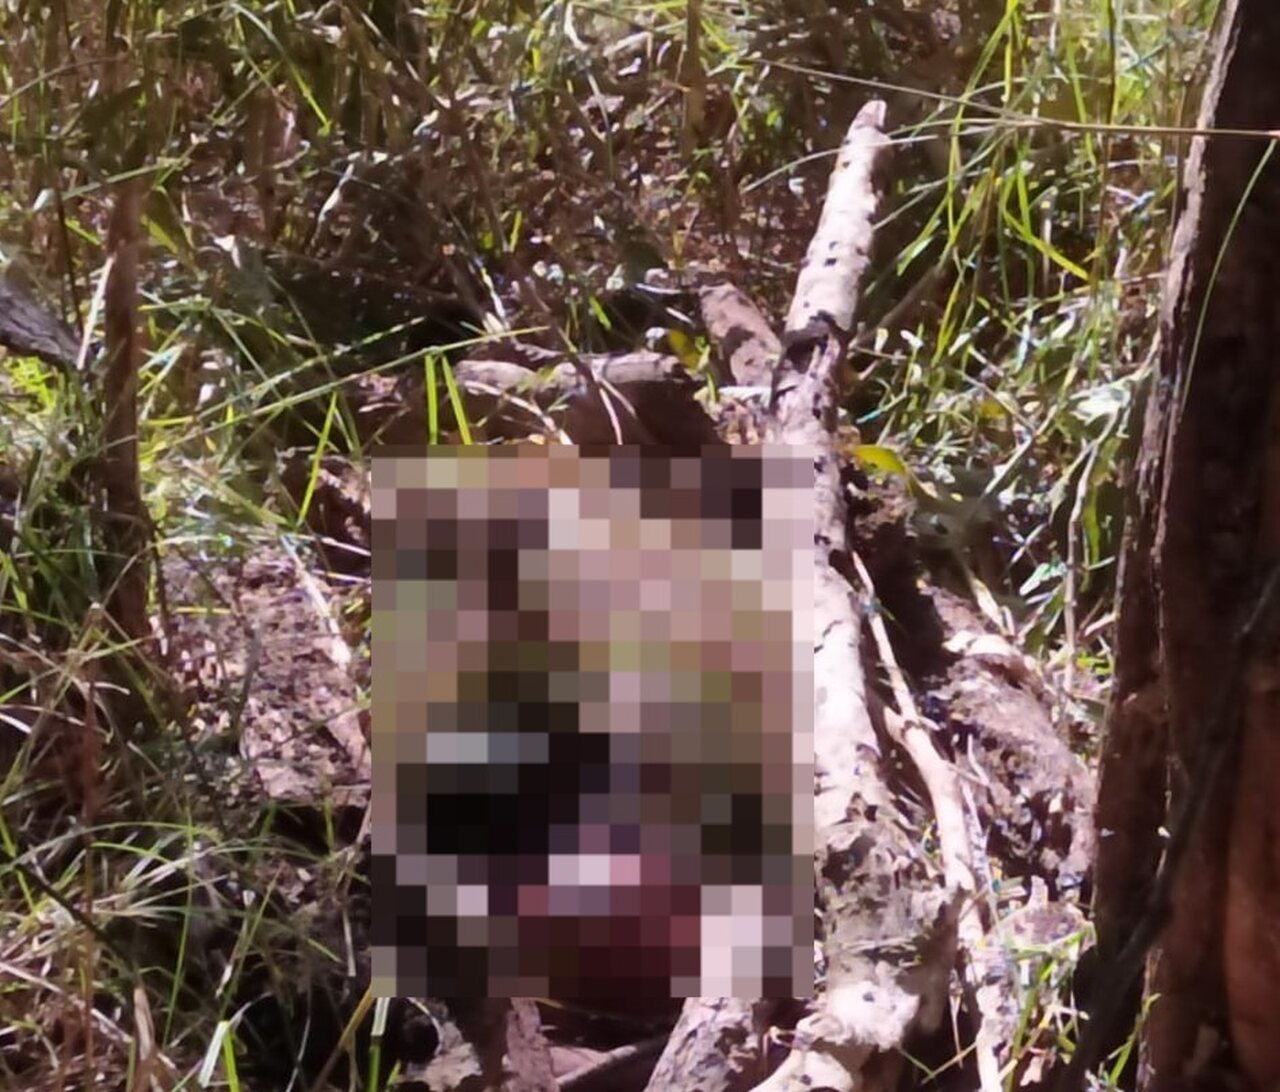 Vaqueiro de 19 anos é preso após confessar ter matado e ocultado o corpo de um homem, em Formoso do Araguaia